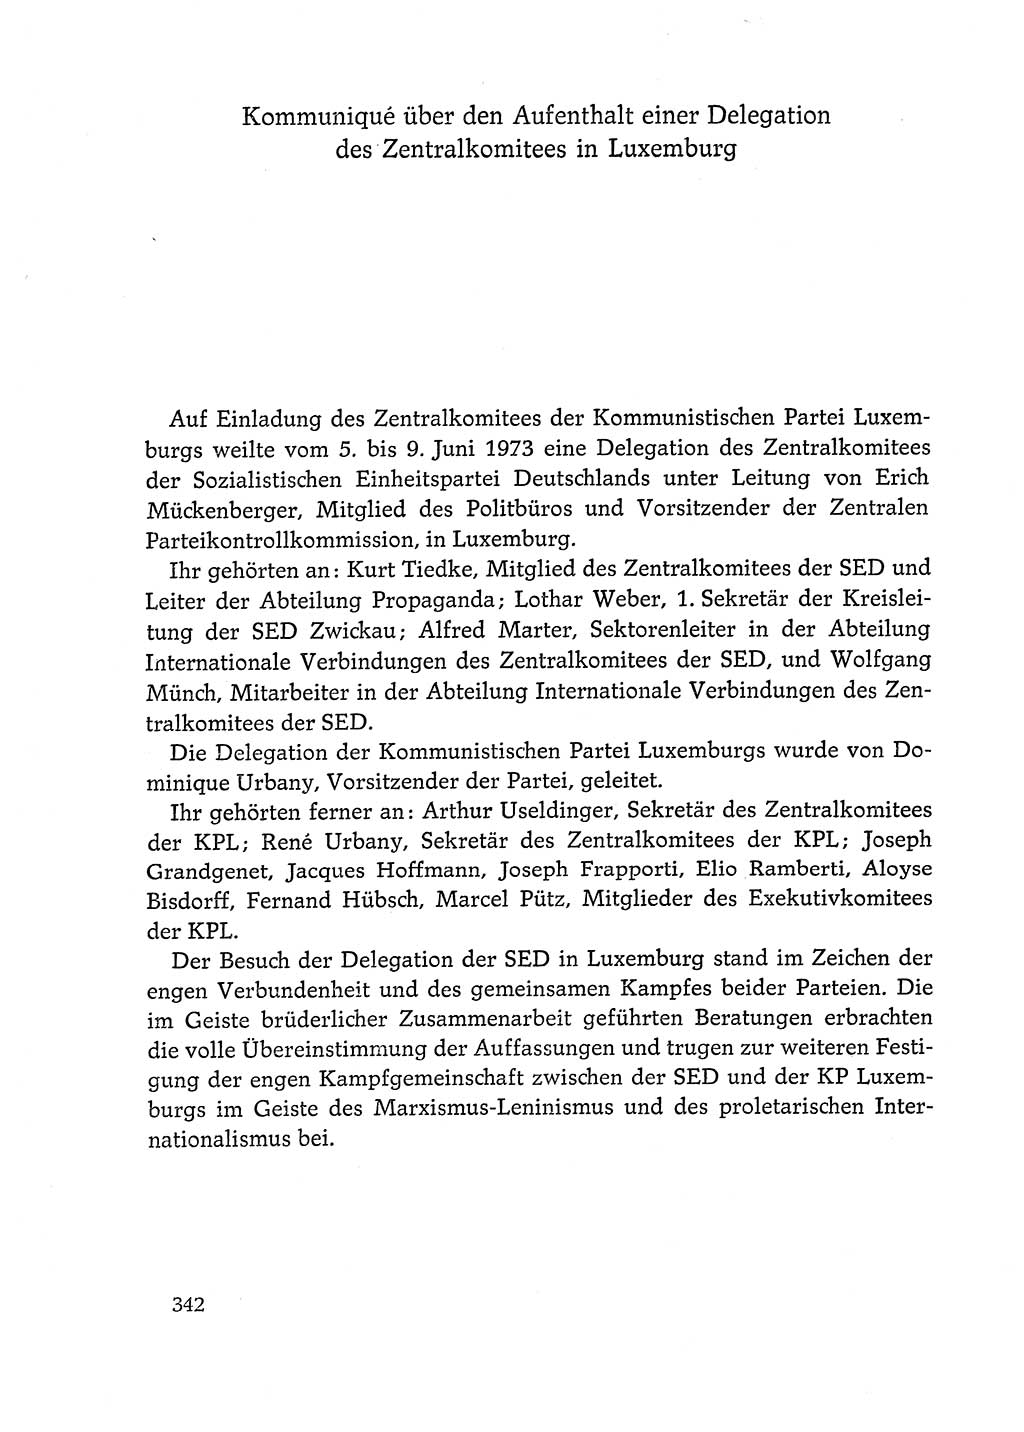 Dokumente der Sozialistischen Einheitspartei Deutschlands (SED) [Deutsche Demokratische Republik (DDR)] 1972-1973, Seite 342 (Dok. SED DDR 1972-1973, S. 342)